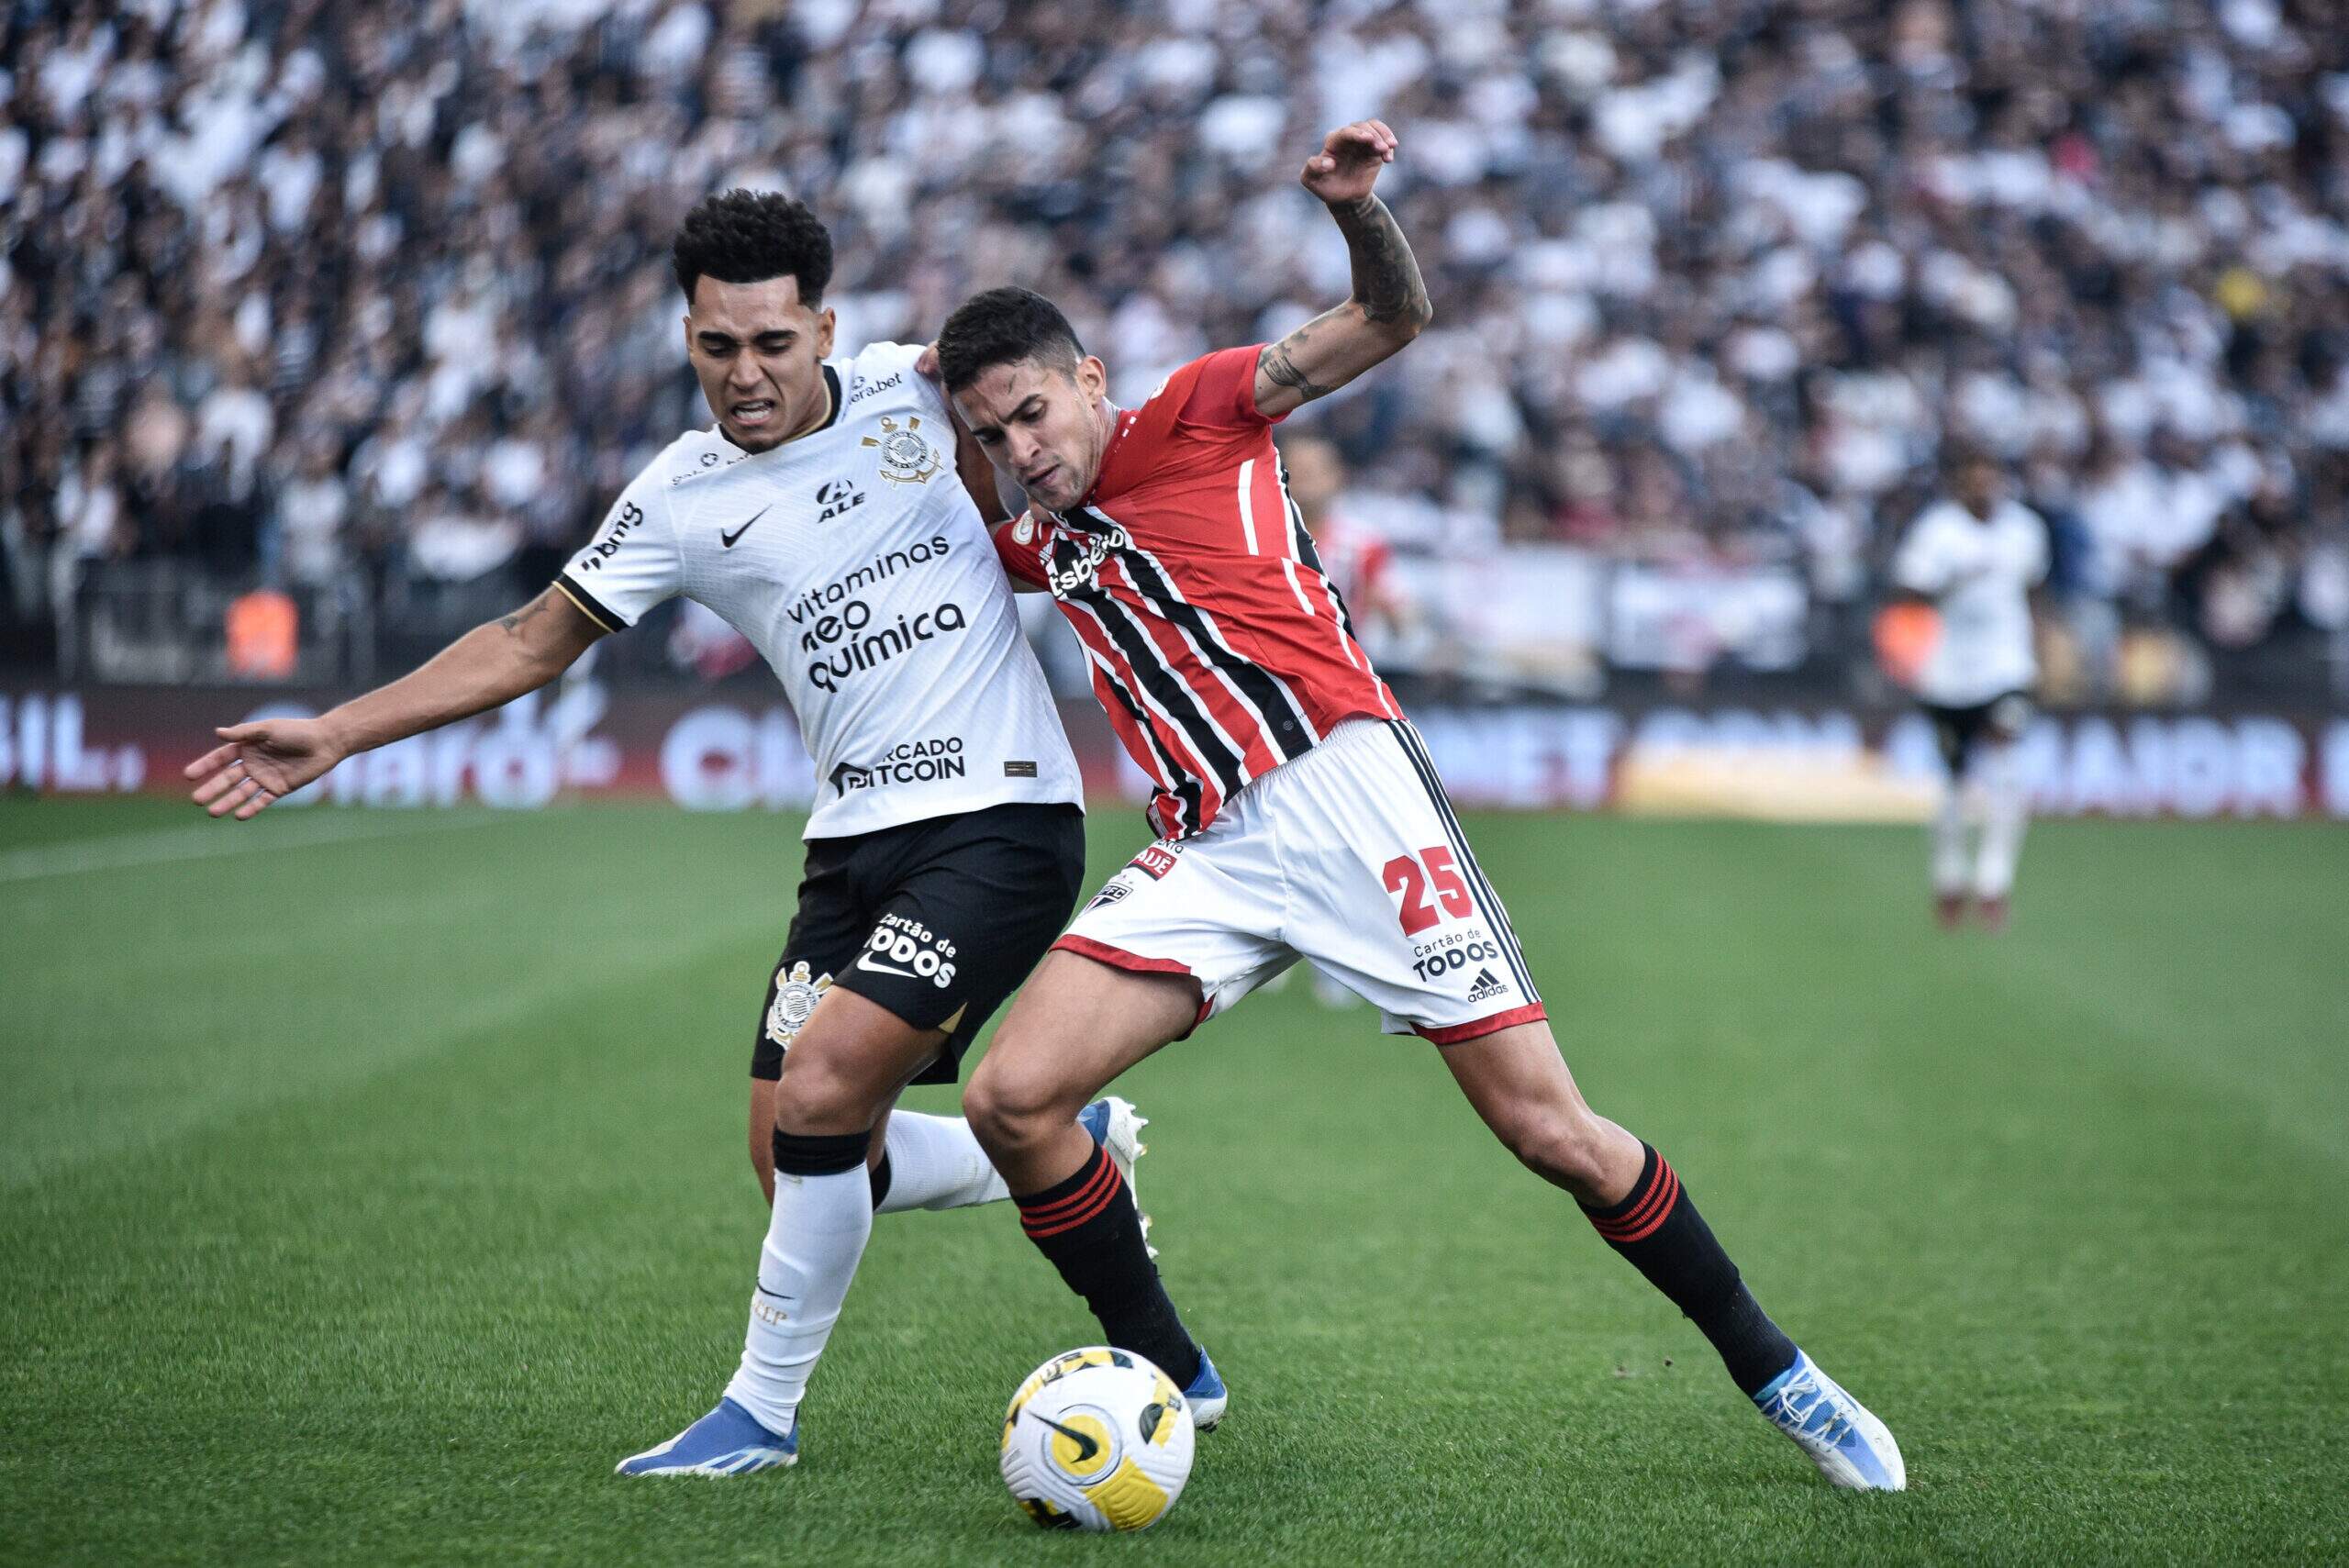 Corinthians empata e mantém tabu de não perder para o São Paulo em sua arena